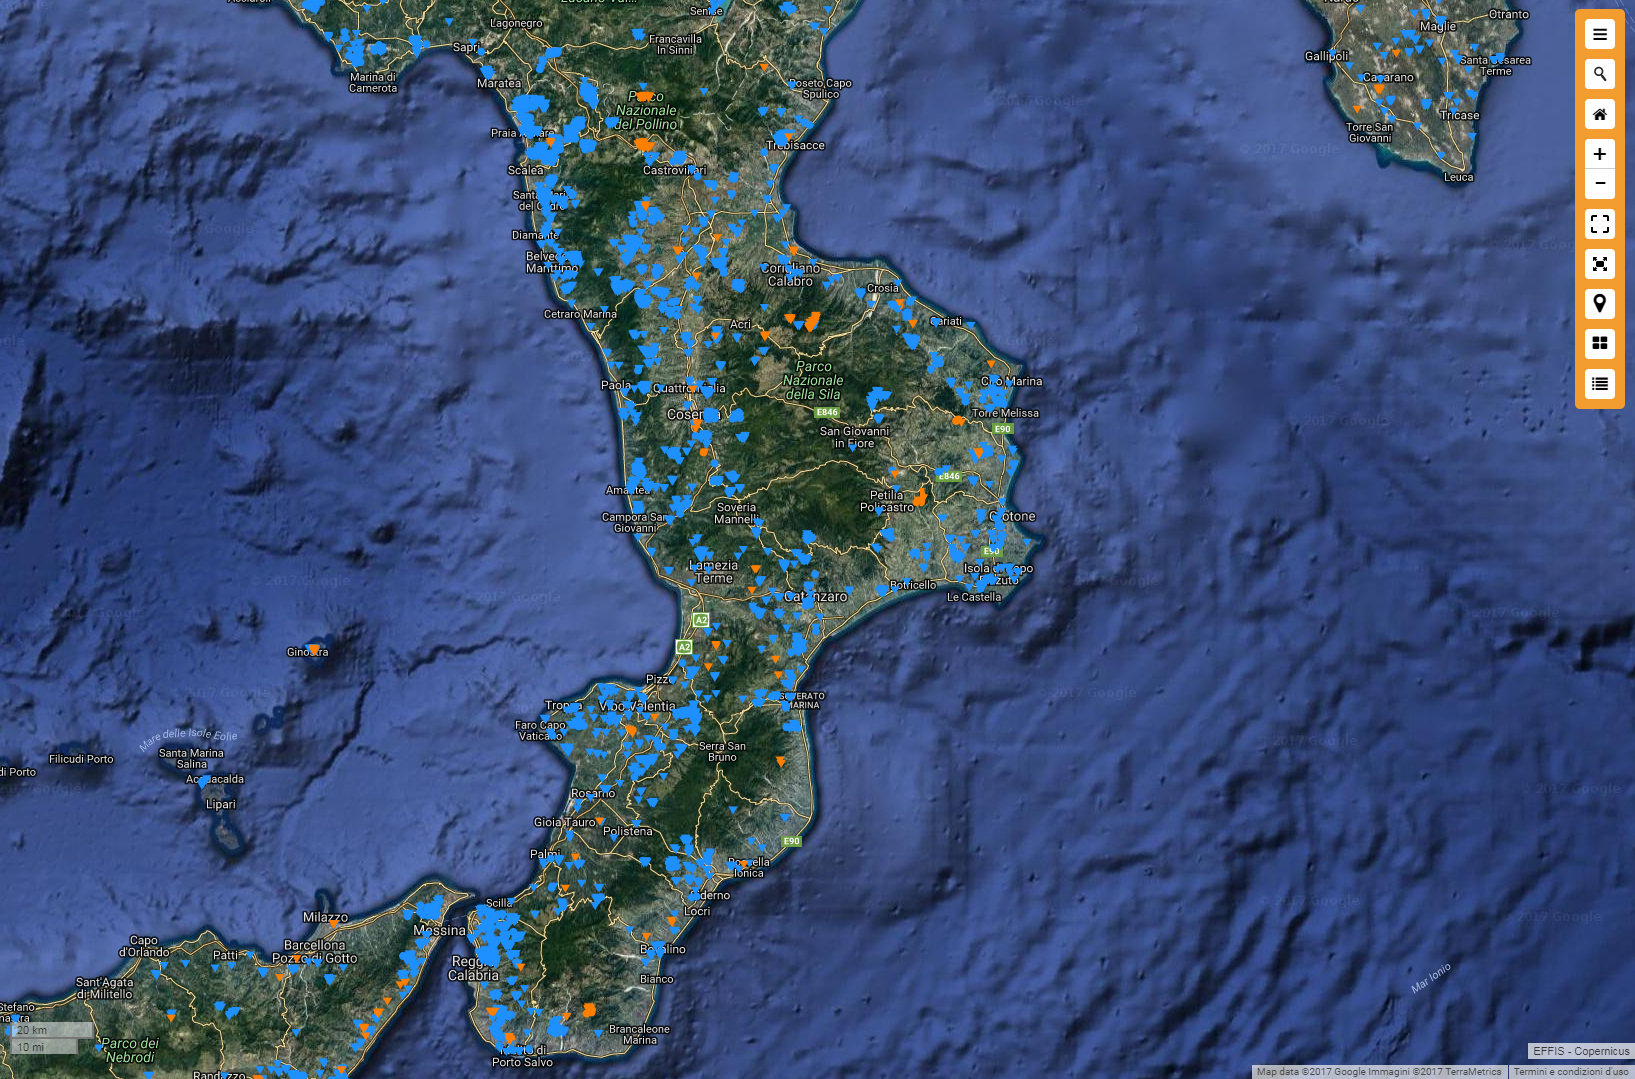 Migliaia di ettari interessati da incendi nel luglio 2017 in Calabria! Ecco i dati e le mappe